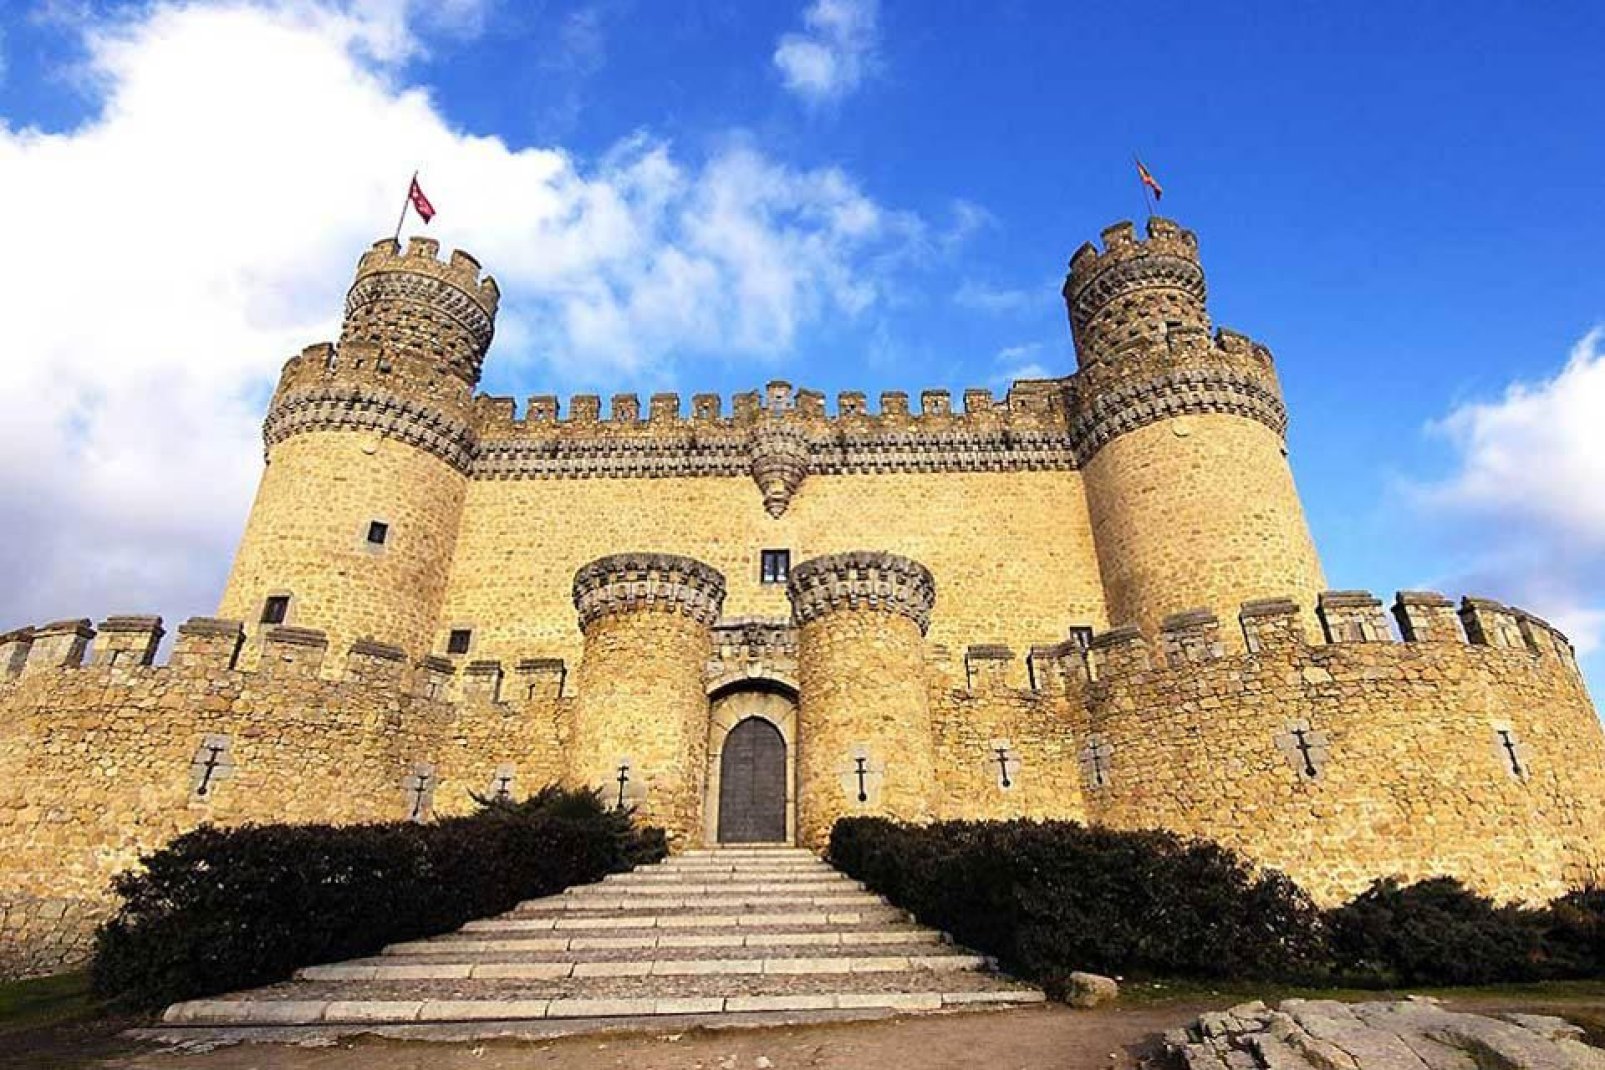 Esta fortaleza data de la Edad Media y se trata de la mejor conservada en la Comunidad de Madrid. Aquí se conserva el sello de Pedro González de Mendoza, arzobispo de Toledo.